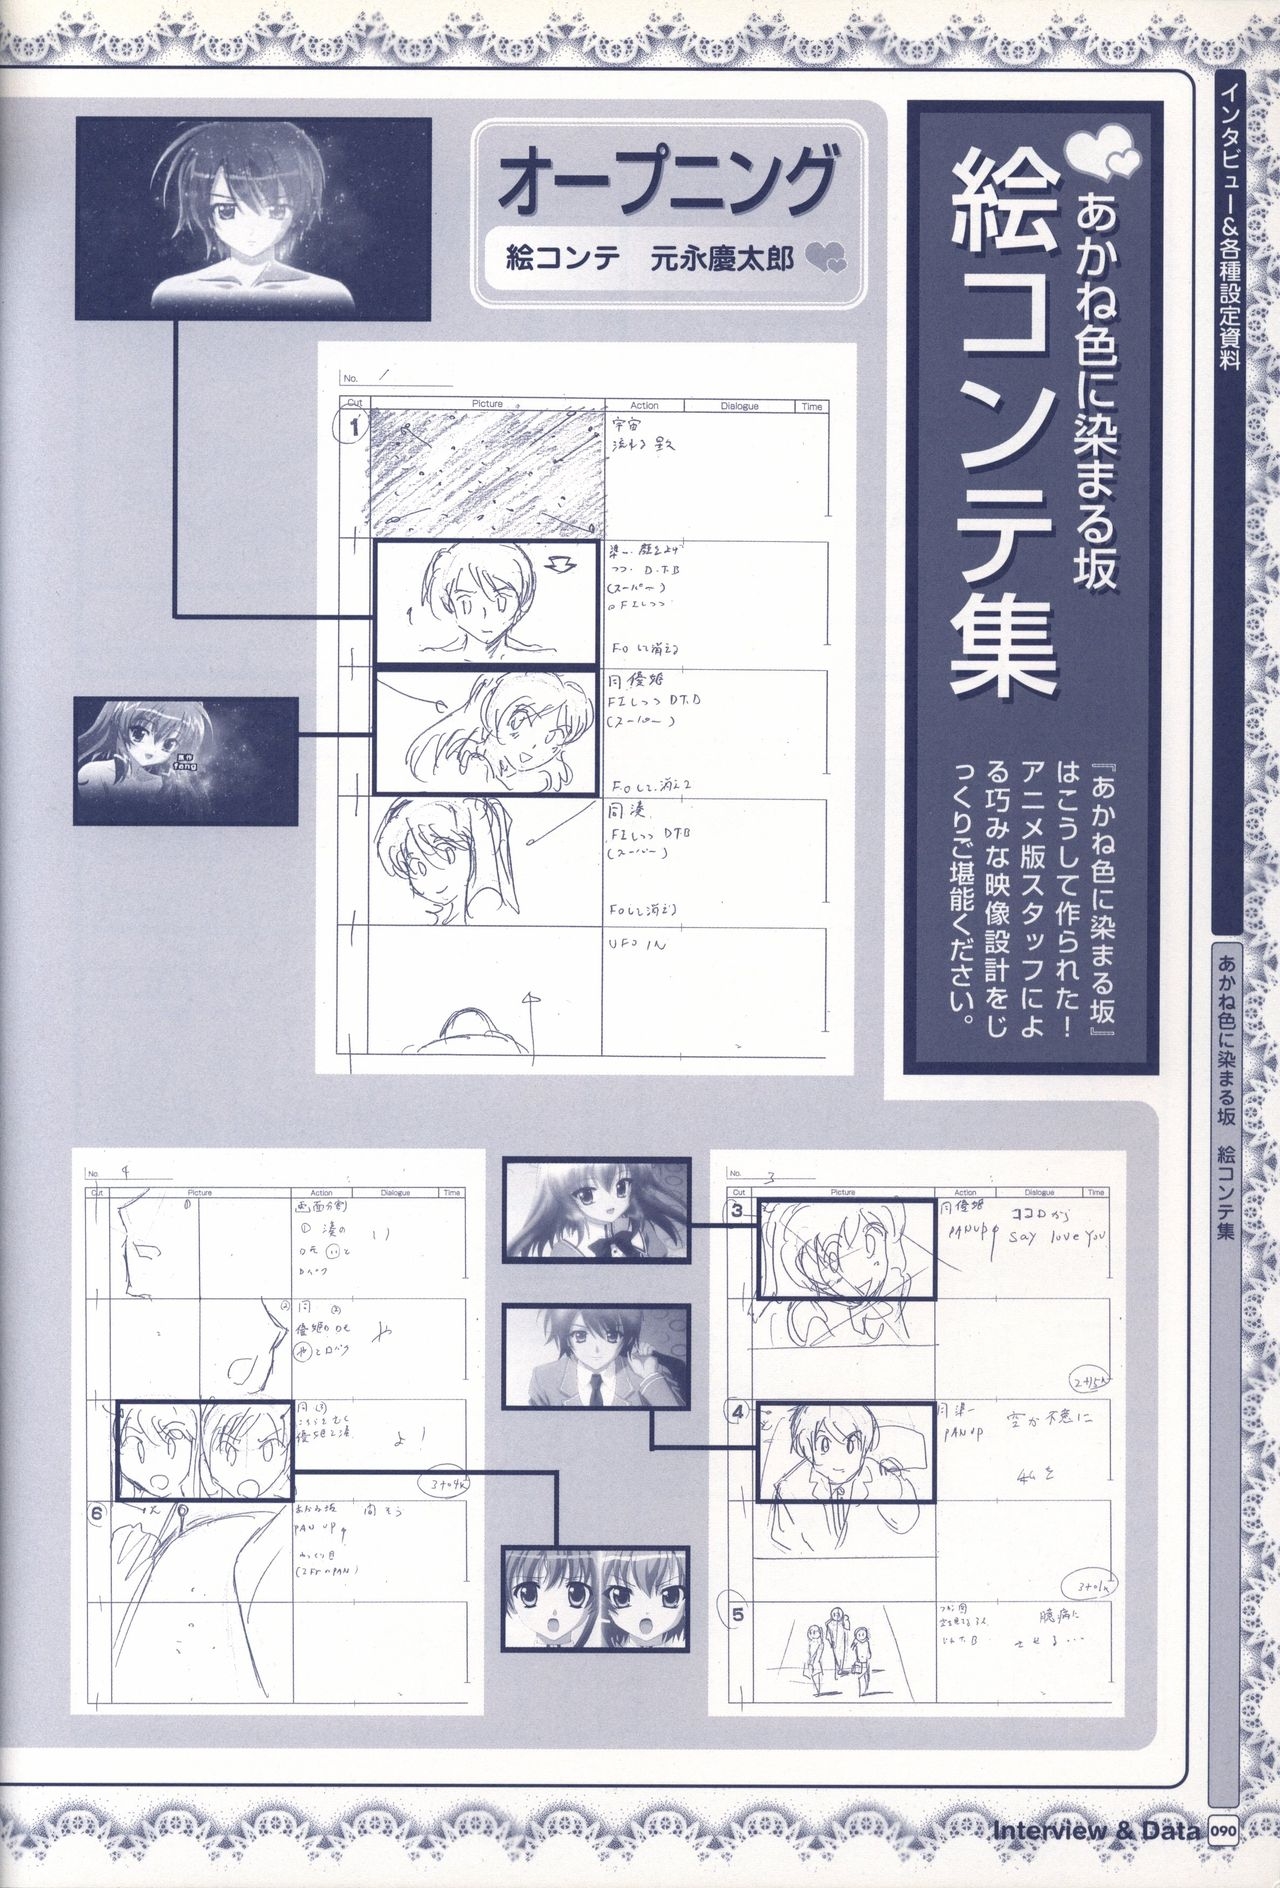 TV ANIME Akaneiro ni Somaru Saka Visual Guide Book 90